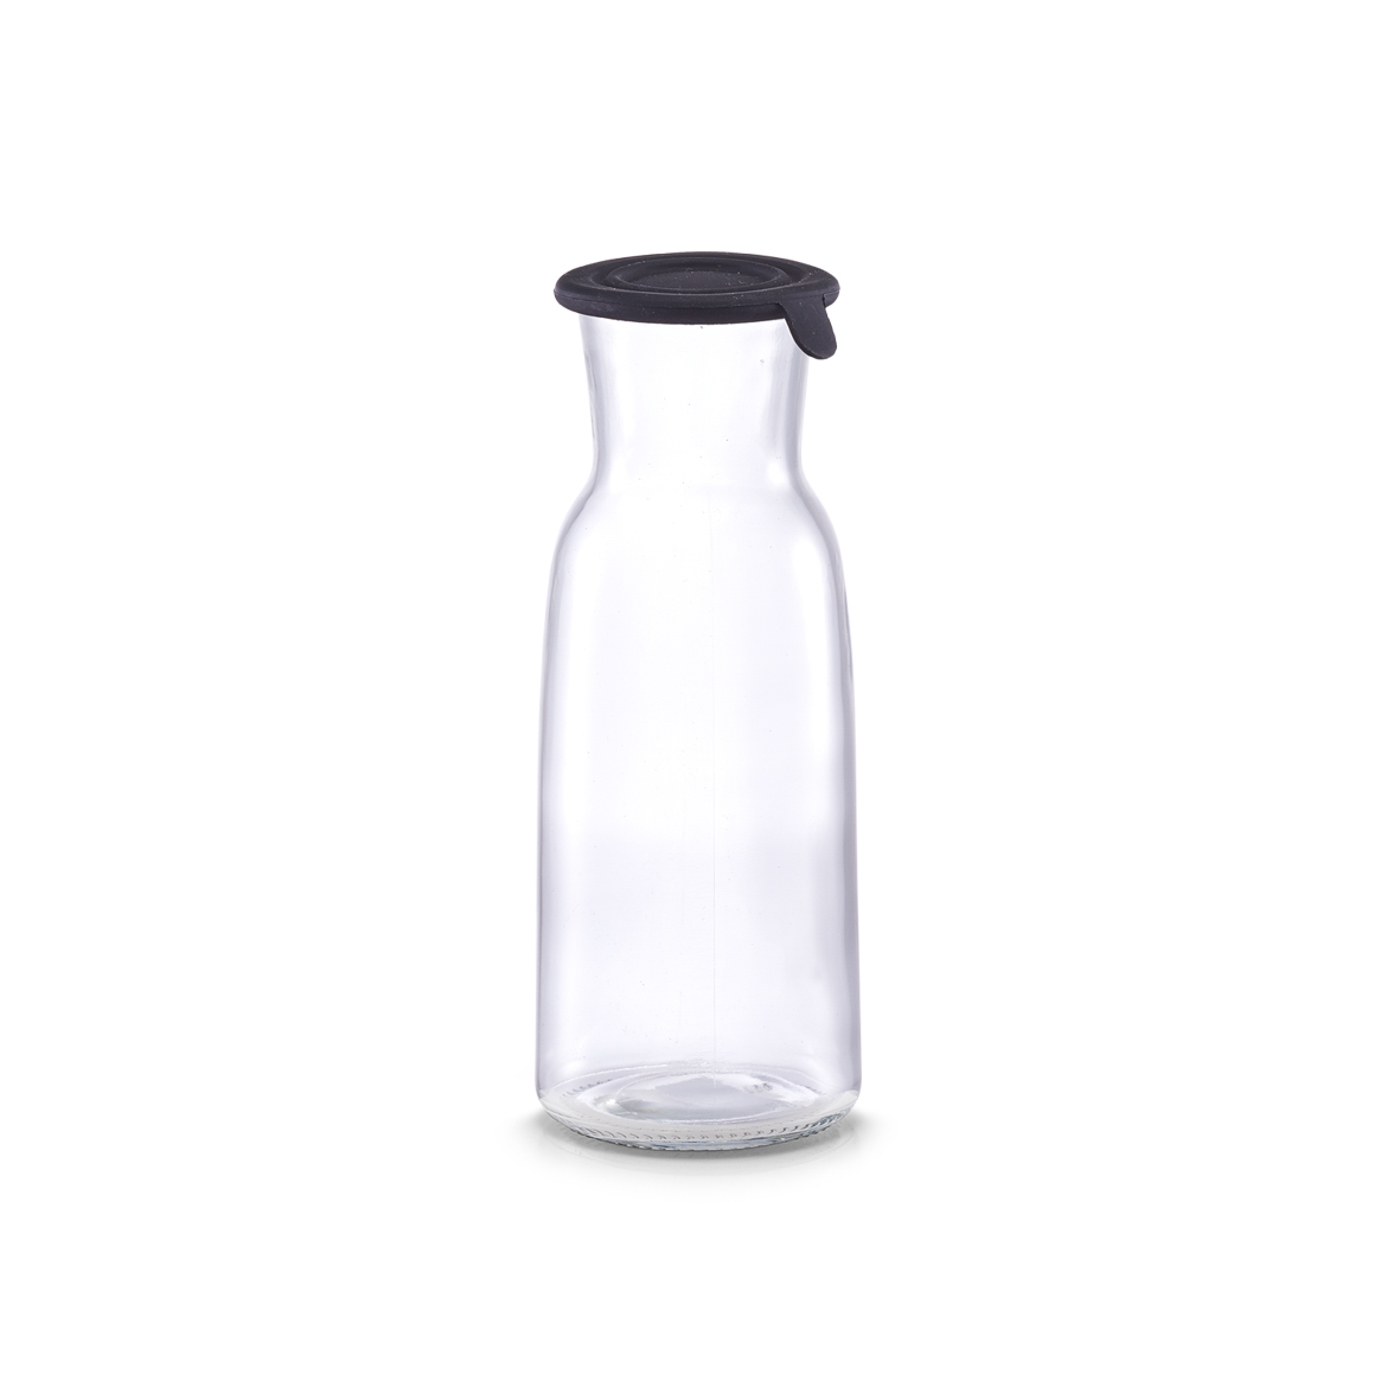 Glasflasche LITT, mit schwarzem Silikondeckel, Inhalt: 0,7 Liter / 700 ml. Höhe 211 mm, Durchmesser 82 mm.